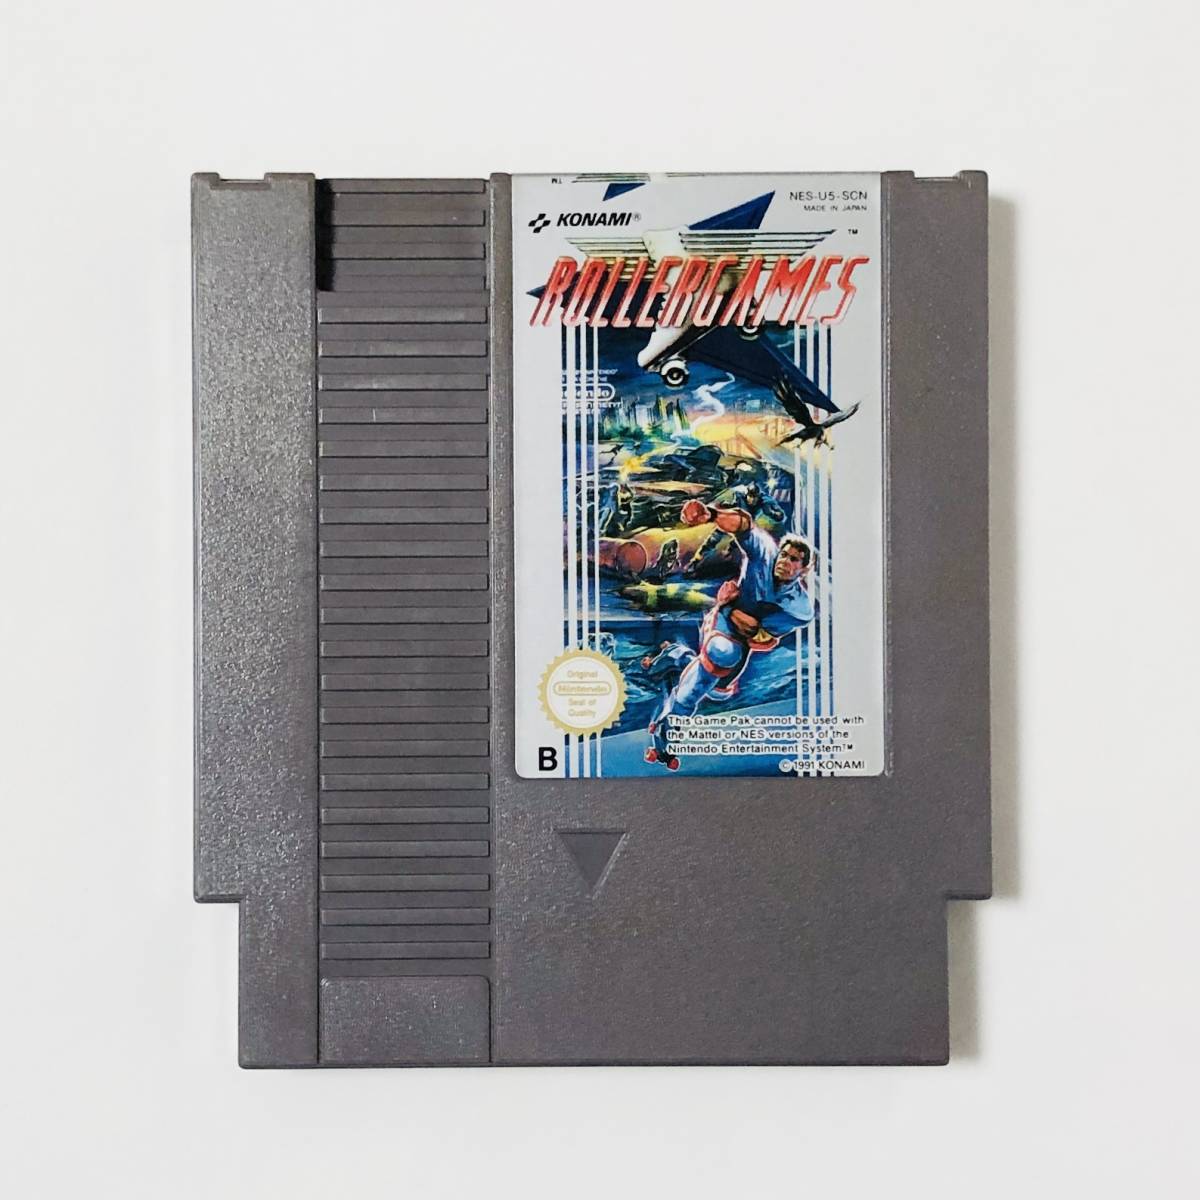 【送料無料】 欧州版 ファミコン NES ローラーゲームズ RollerGames (PAL B) ソフトのみ Konami コナミ レトロゲーム_画像3